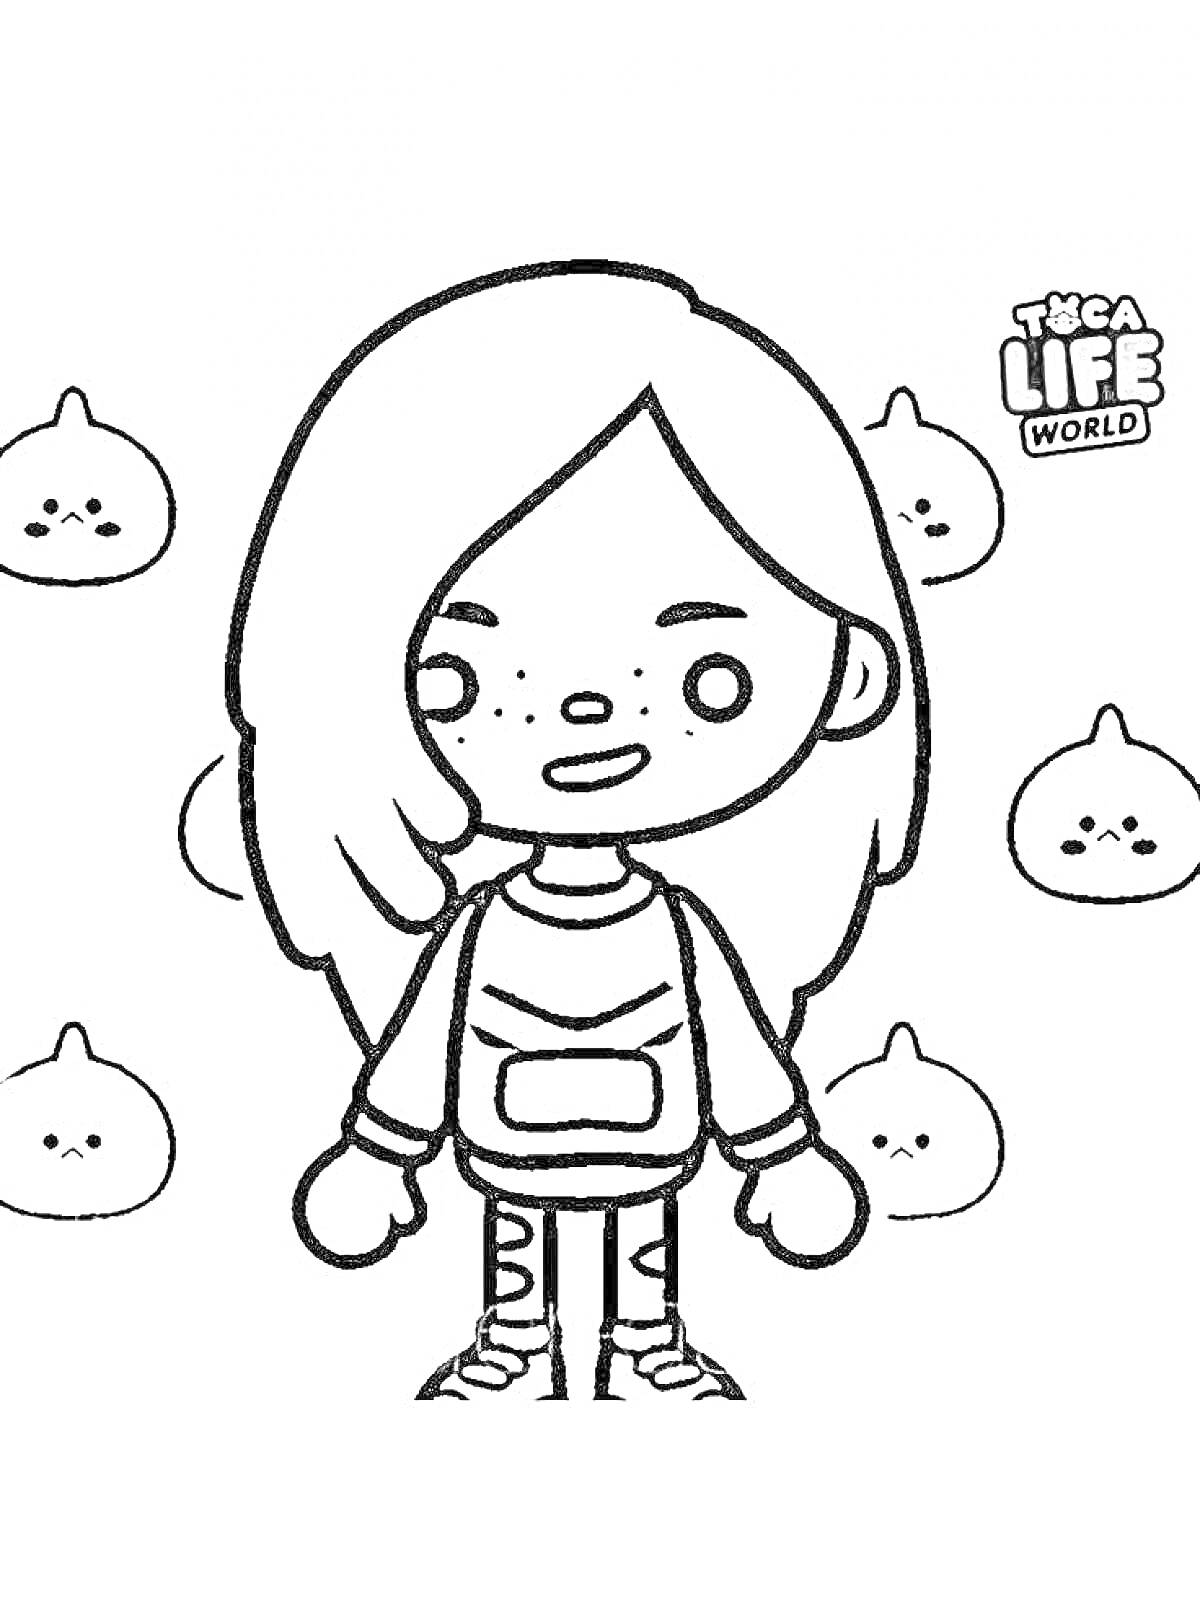 Девочка с длинными волосами, веснушками и рюкзаком на фоне маленьких существ